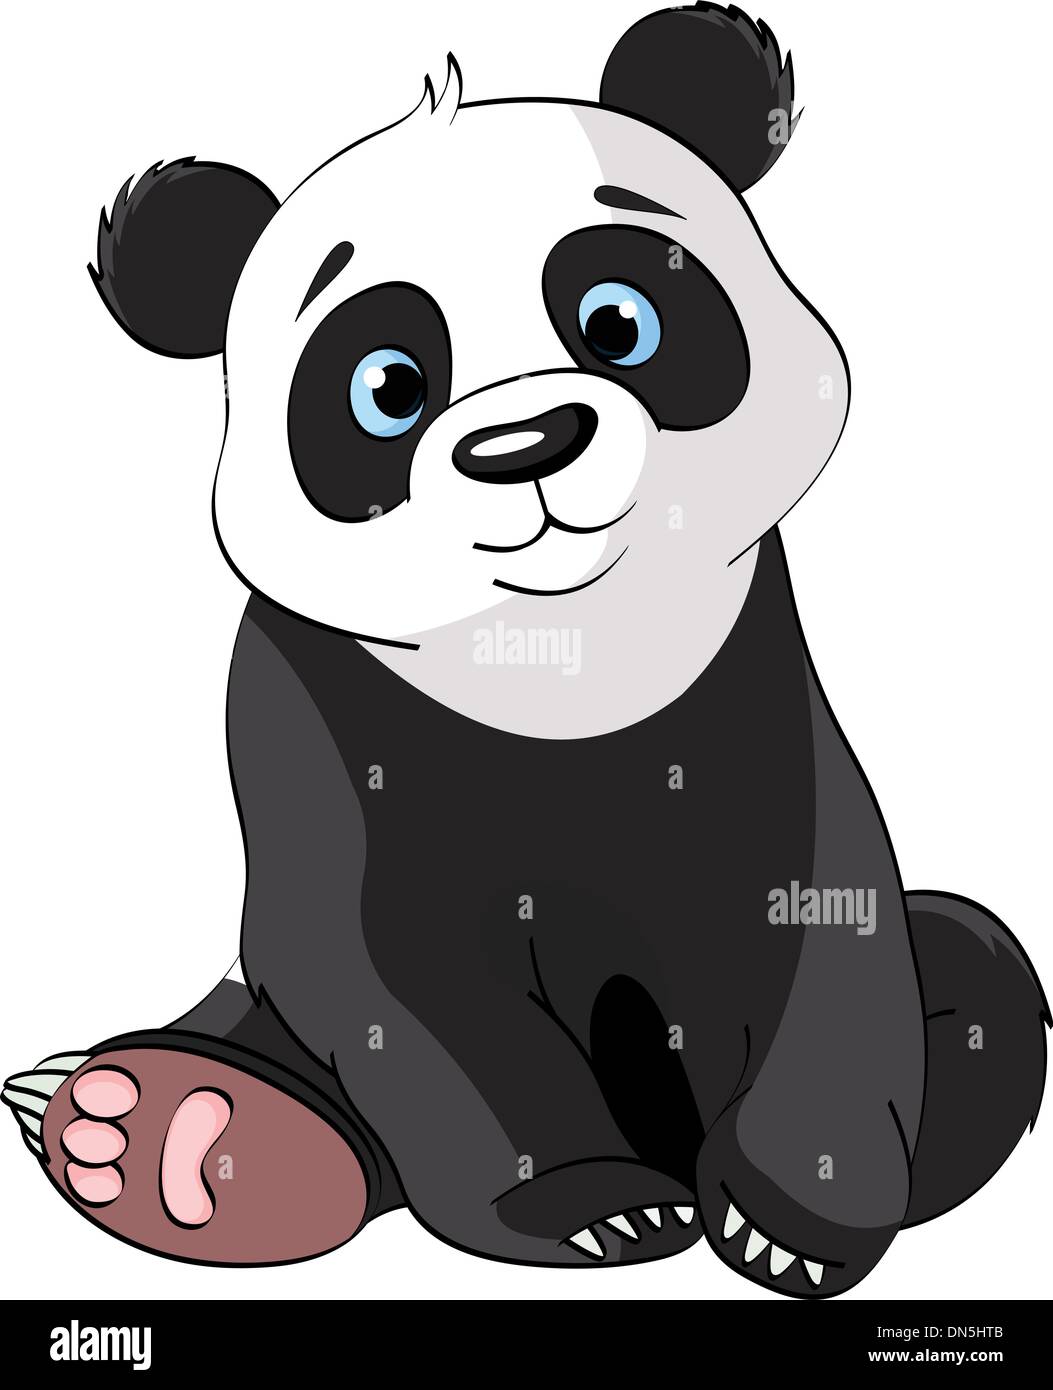 kawaii panda - Buscar con Google  Dessin kawaii panda, Dessin kawaii logo,  Dessin animaux mignons